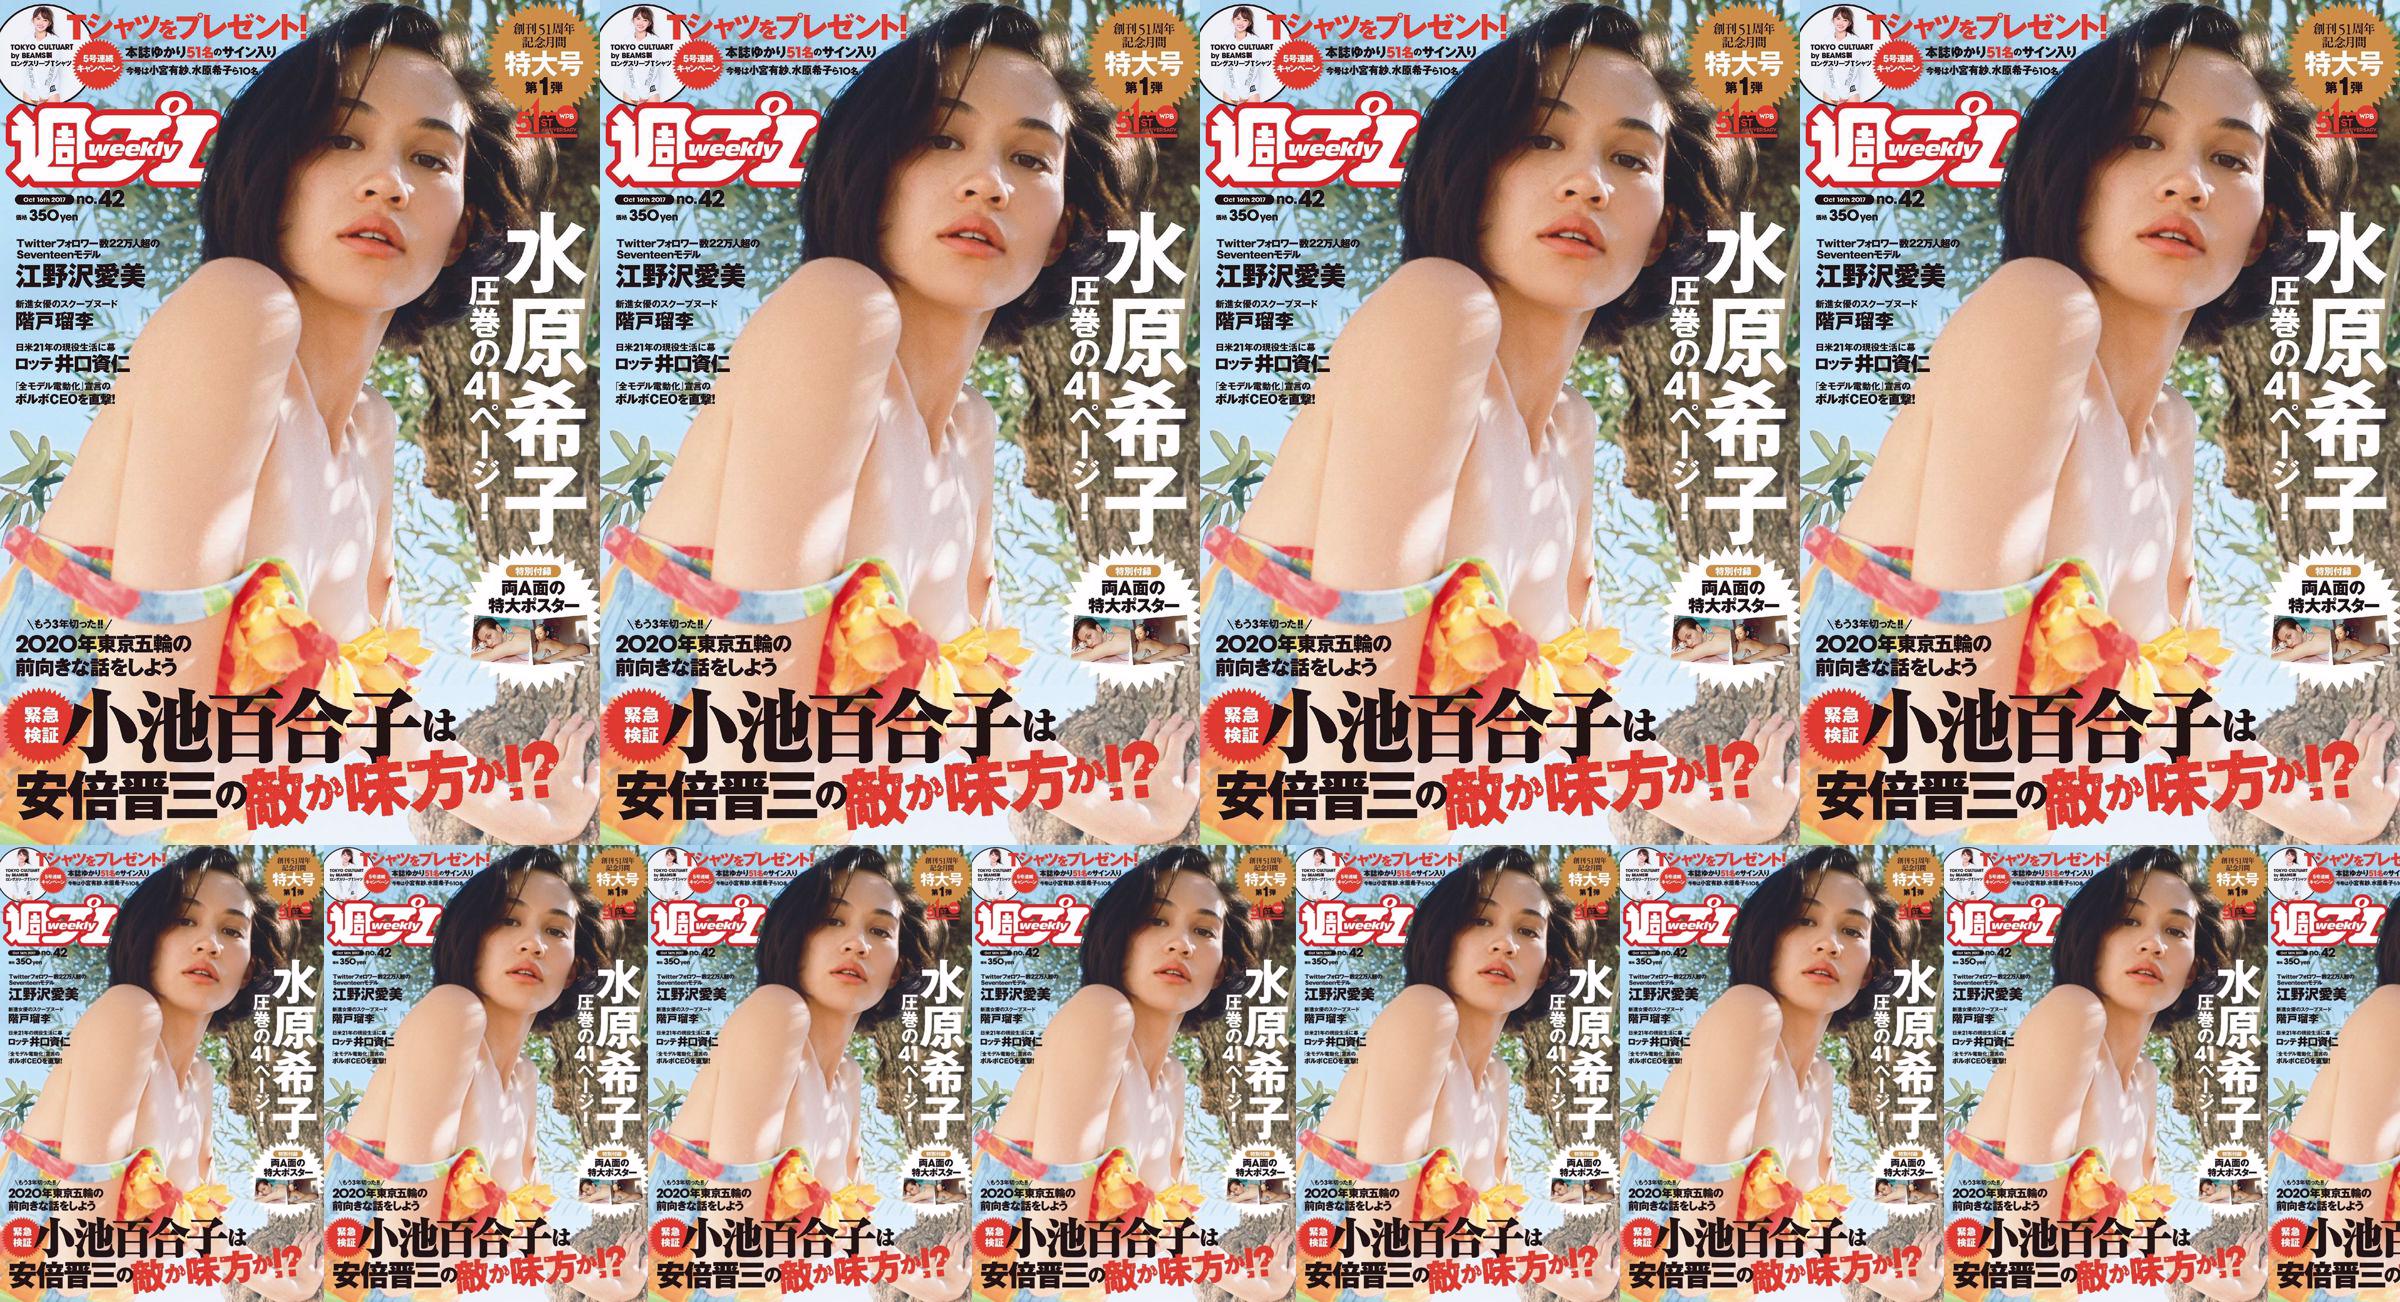 Kiko Mizuhara Manami Enosawa Serina Fukui Miu Nakamura Ruri Shinato [Playboy semanal] 2017 No 42 Revista fotográfica No.b06be1 Página 1